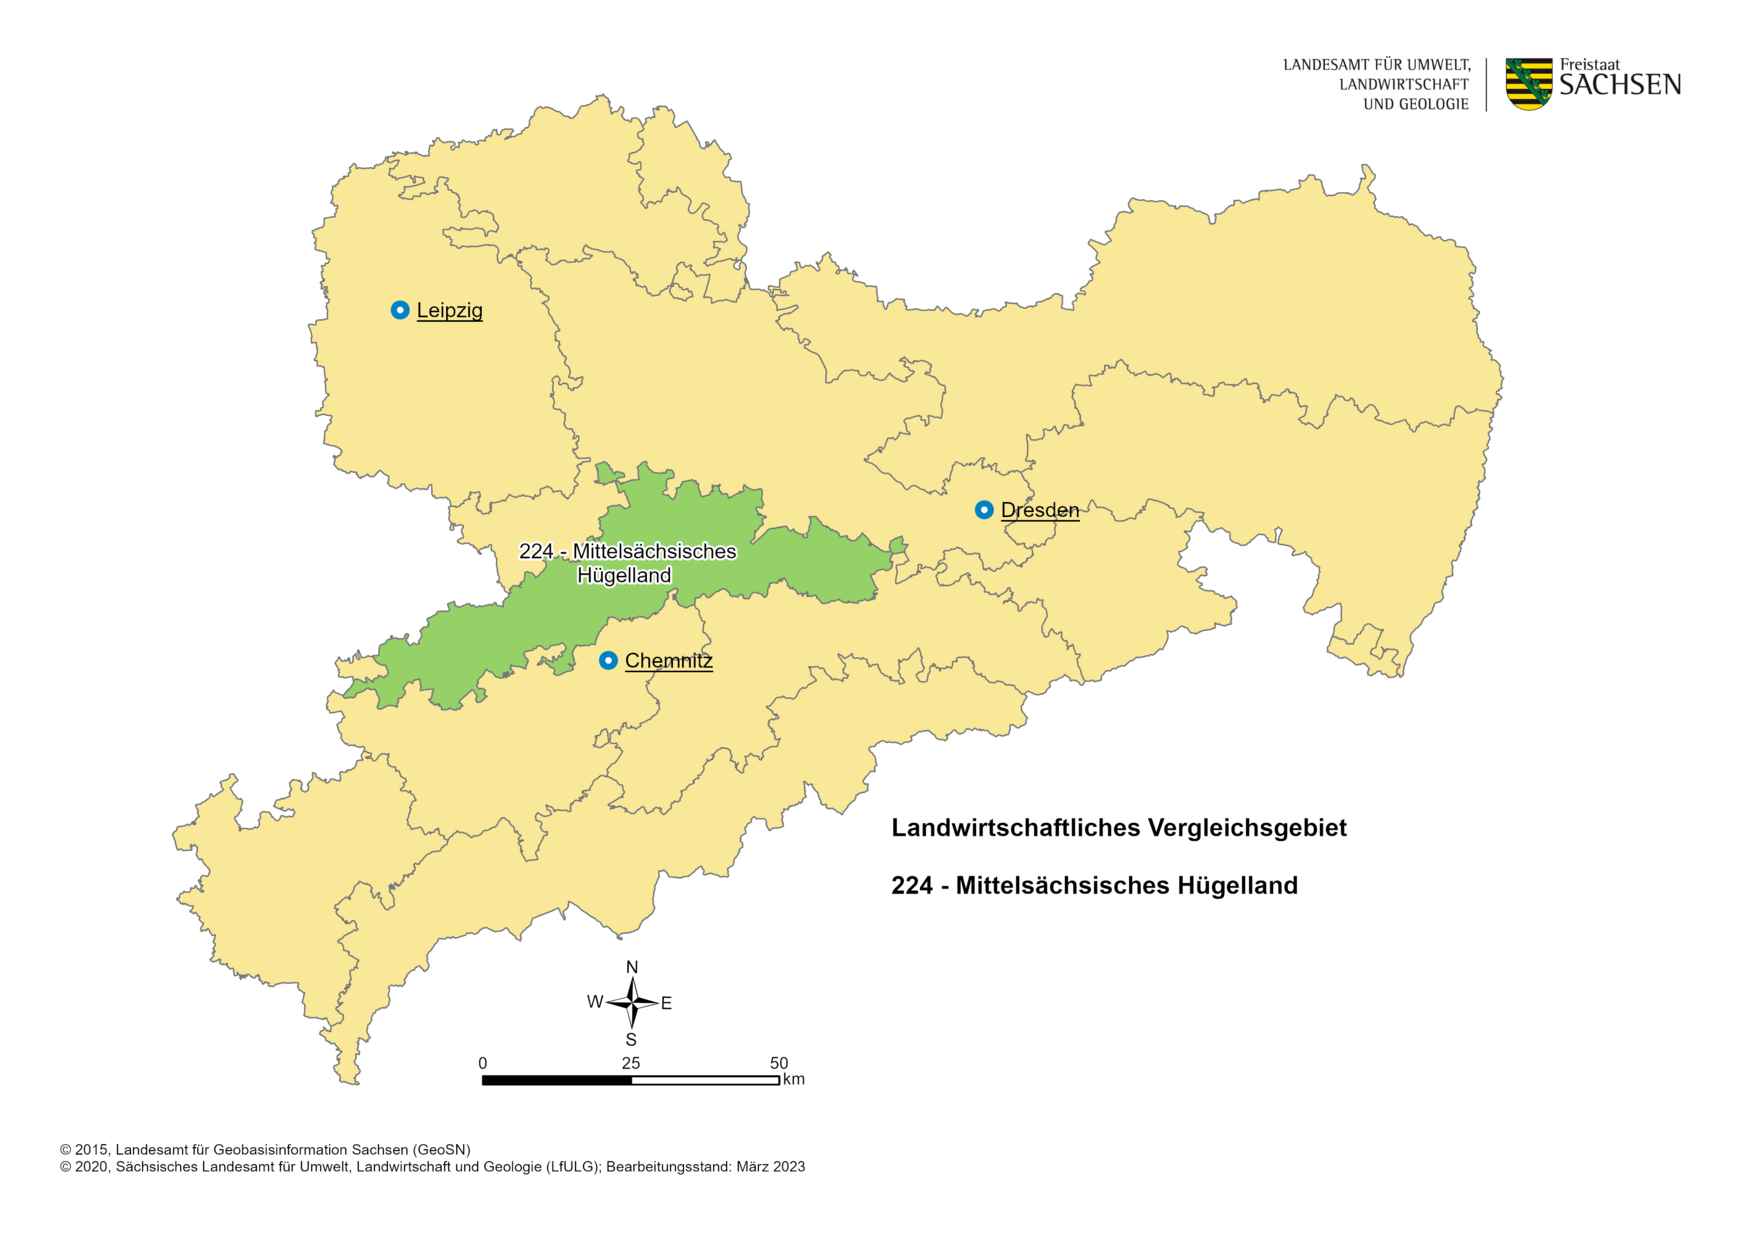 Vergleichsgebiet 224 - Mittelsächsisches Hügelland